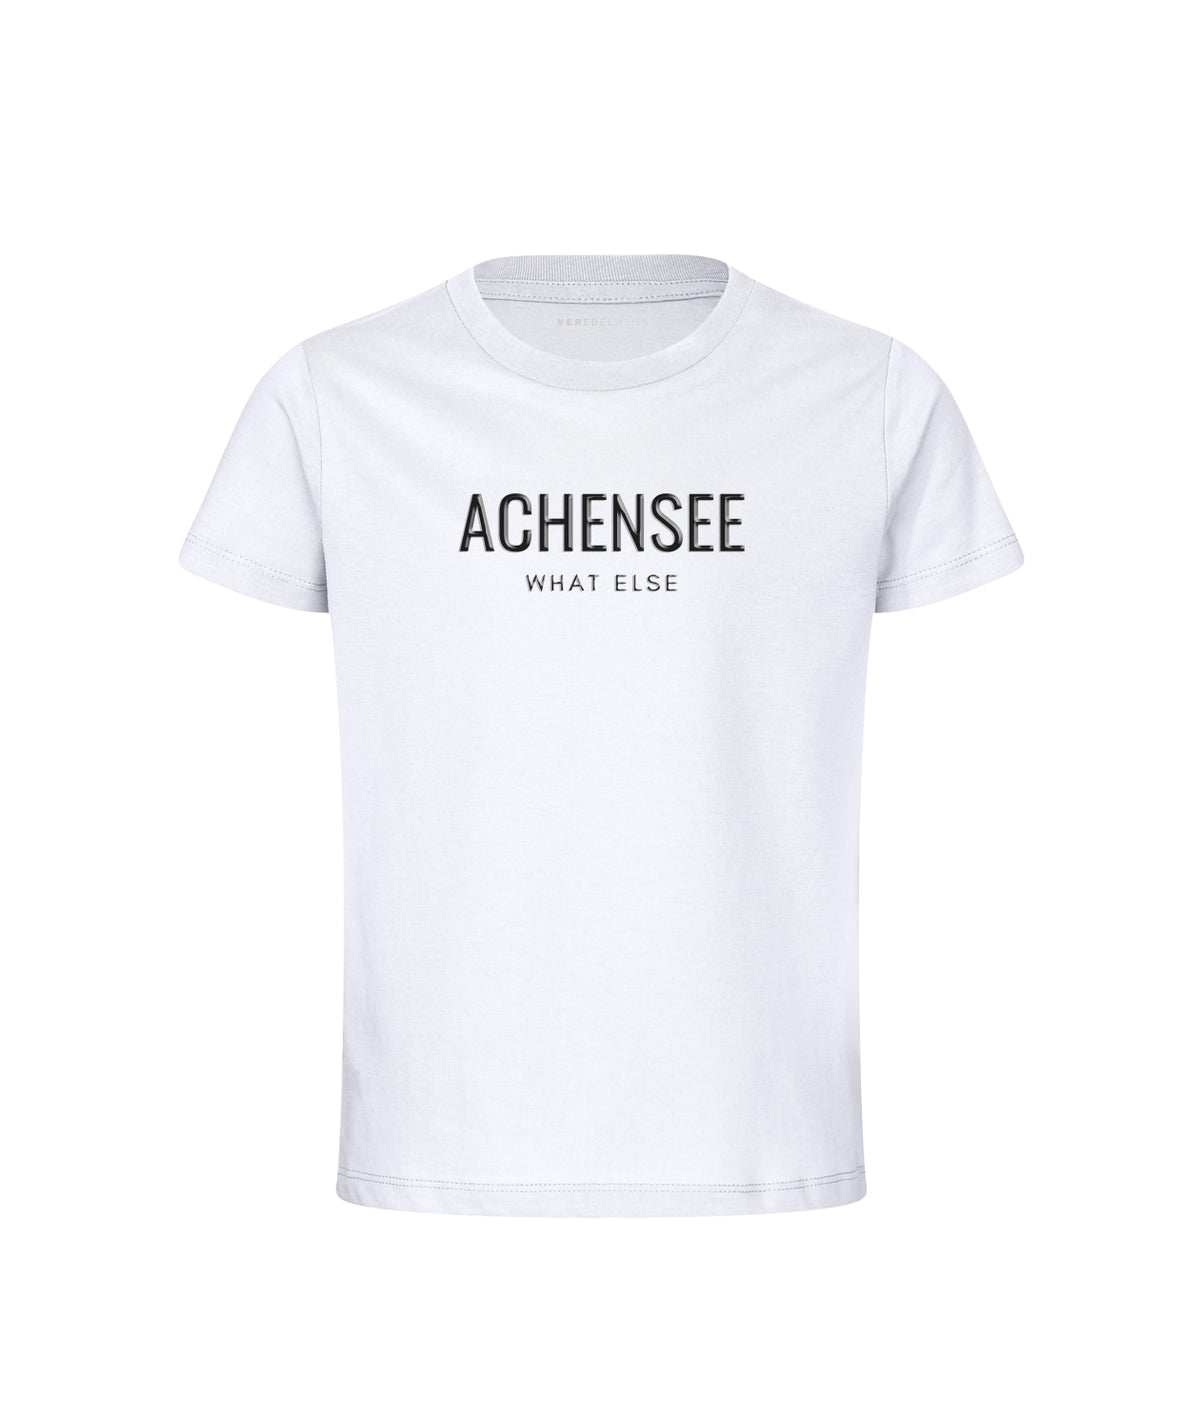 Achensee - What Else (Kinder)